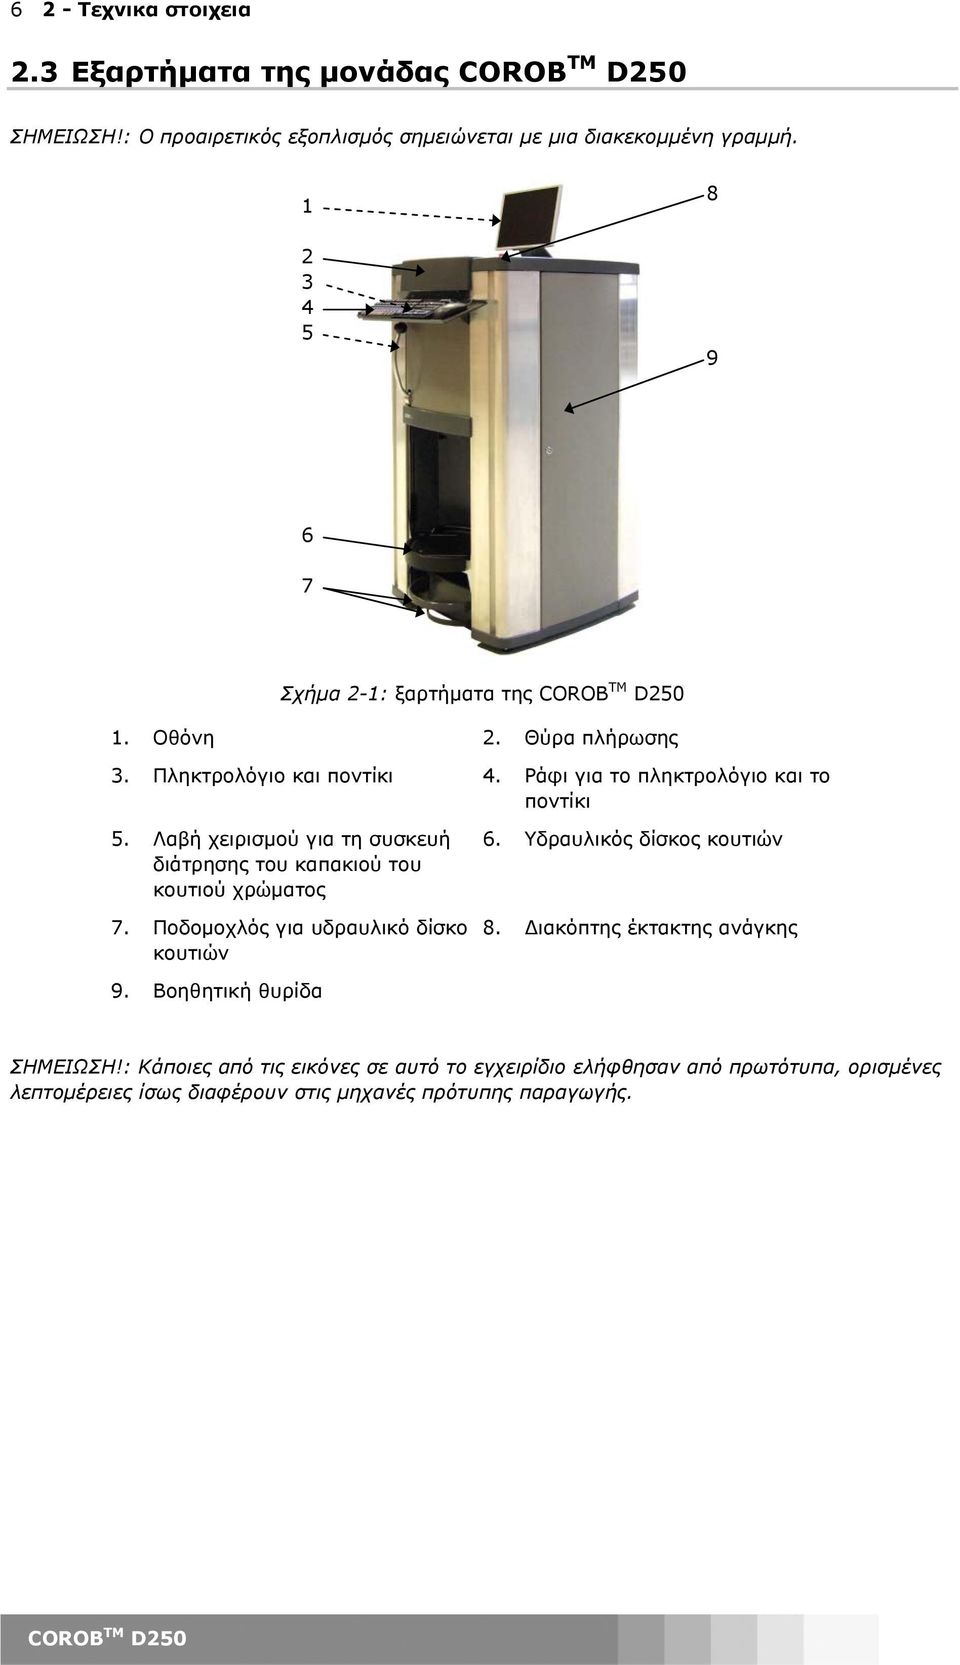 Λαβή χειρισµού για τη συσκευή διάτρησης του καπακιού του κουτιού χρώµατος 7. Ποδοµοχλός για υδραυλικό δίσκο κουτιών 6. Υδραυλικός δίσκος κουτιών 8.